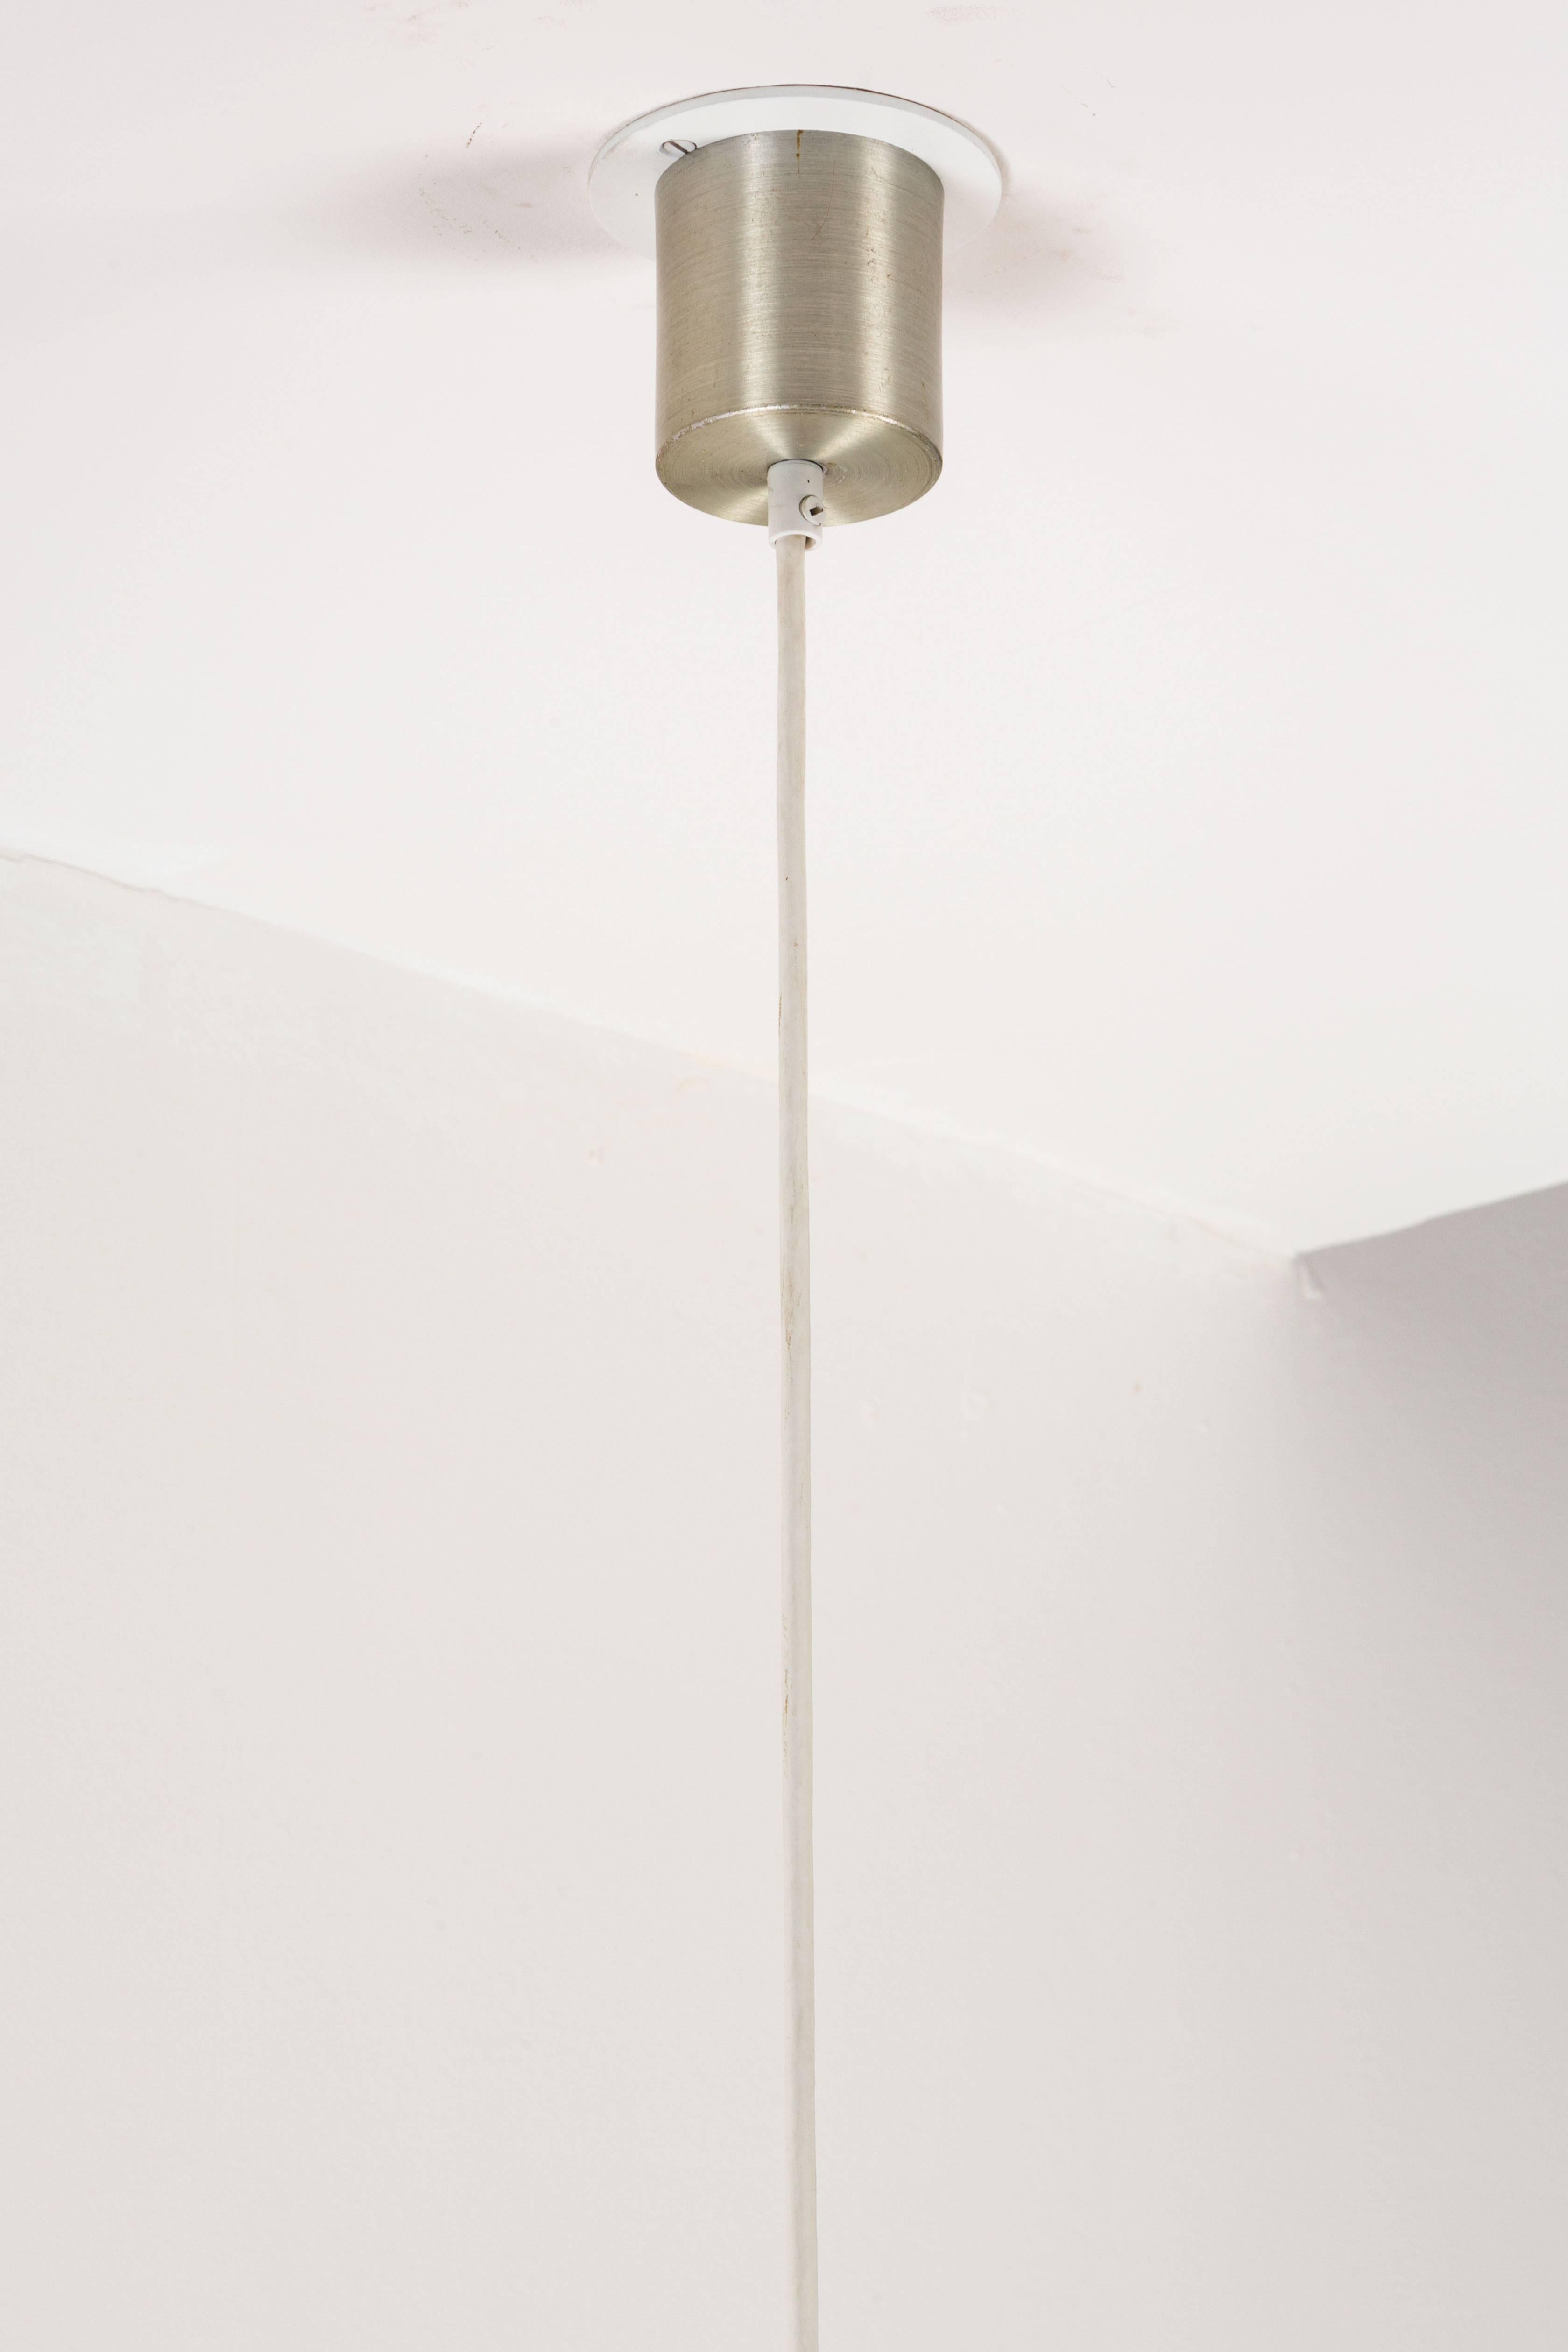 Rare Model 4065 Hanging Lamp by Gerd Lange for Kartell 3